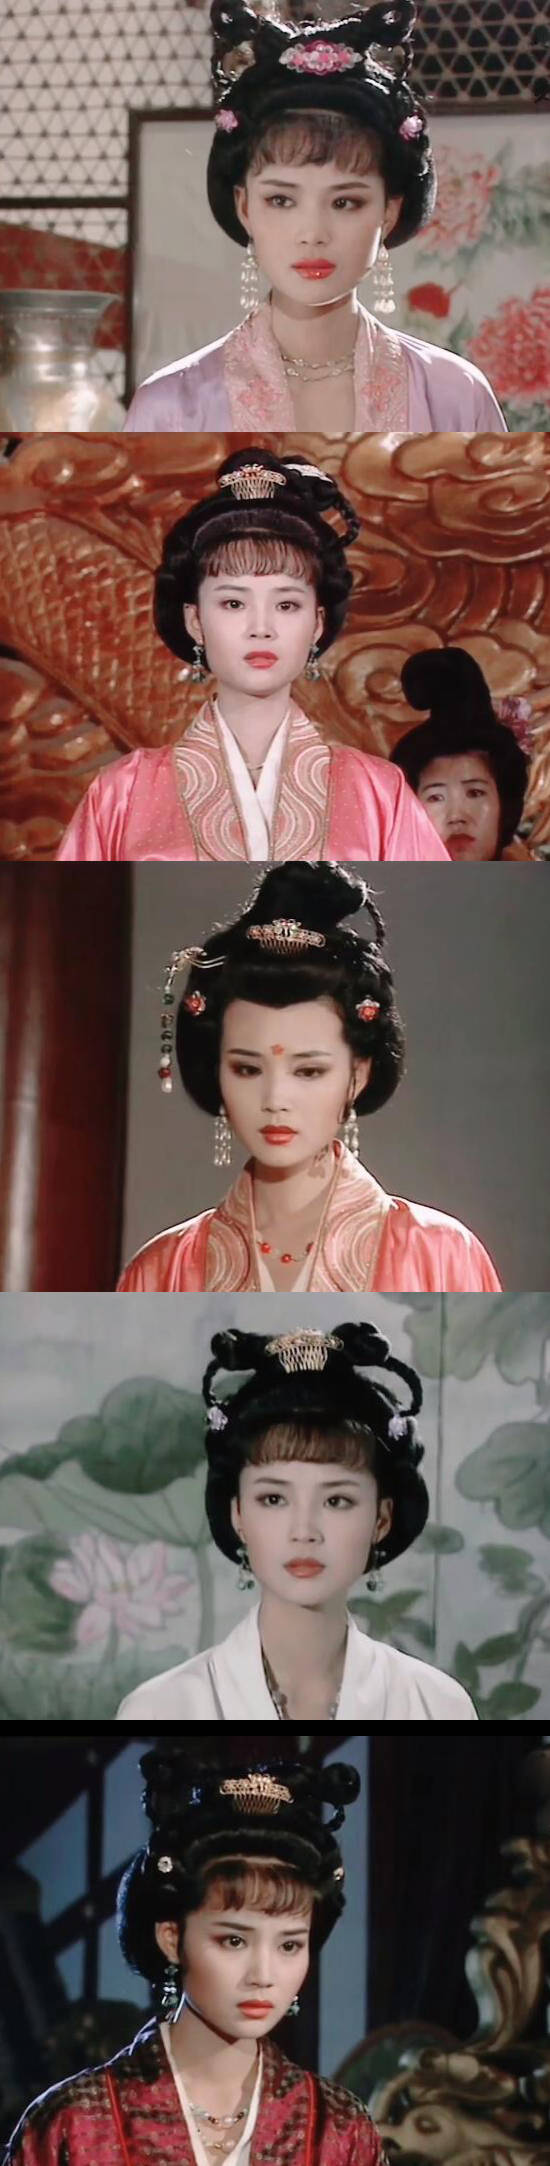 同时期的《汉宫飞燕》也是李建群做服装造型,做妆发的则是毛戈平的